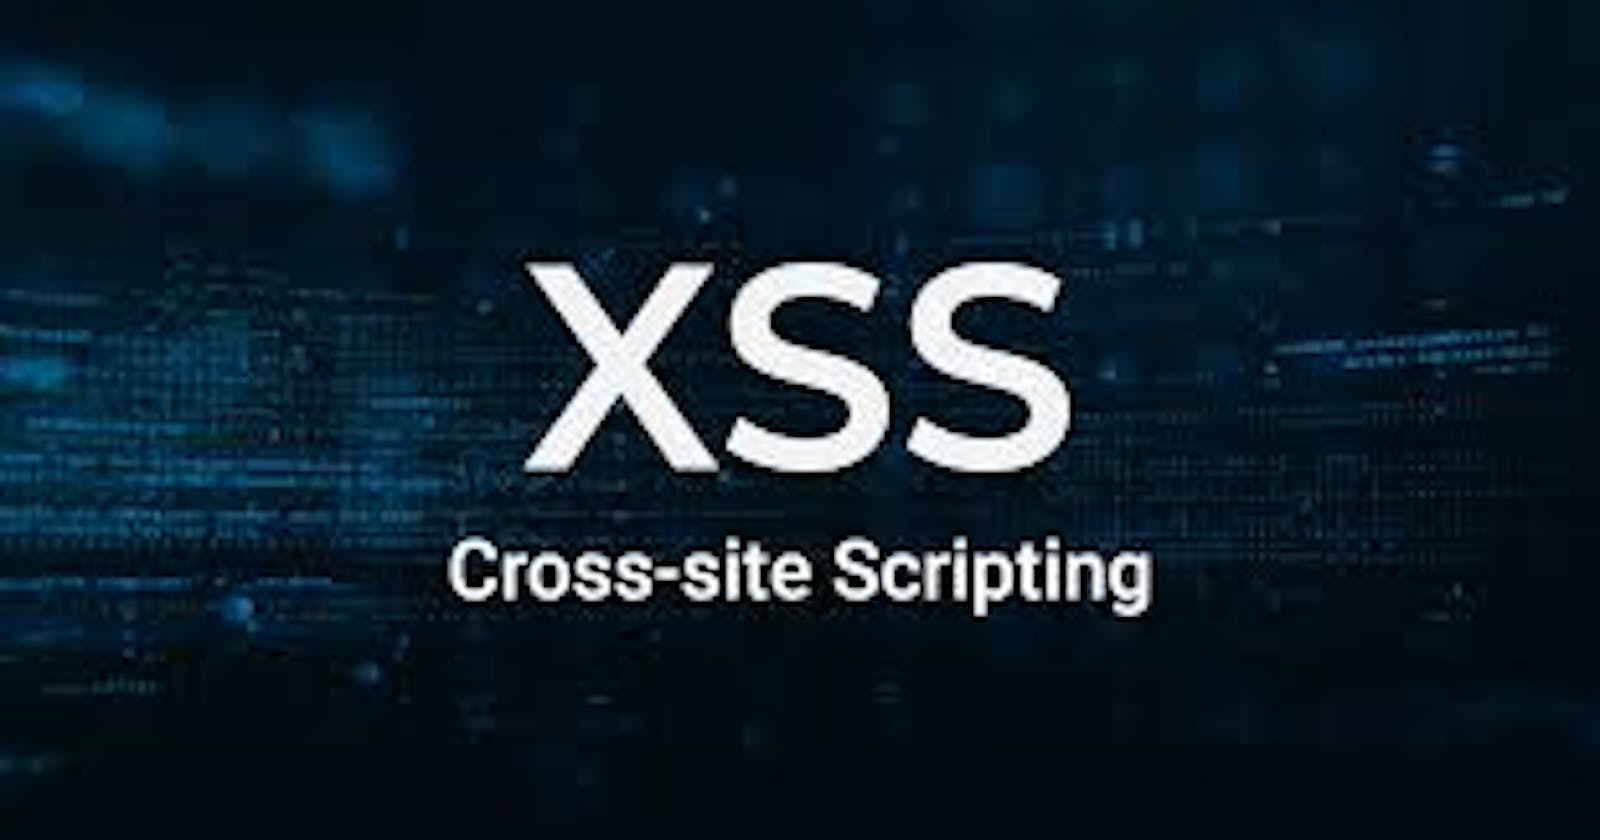 4 Basic Steps for Finding XSS Vulnerabilities